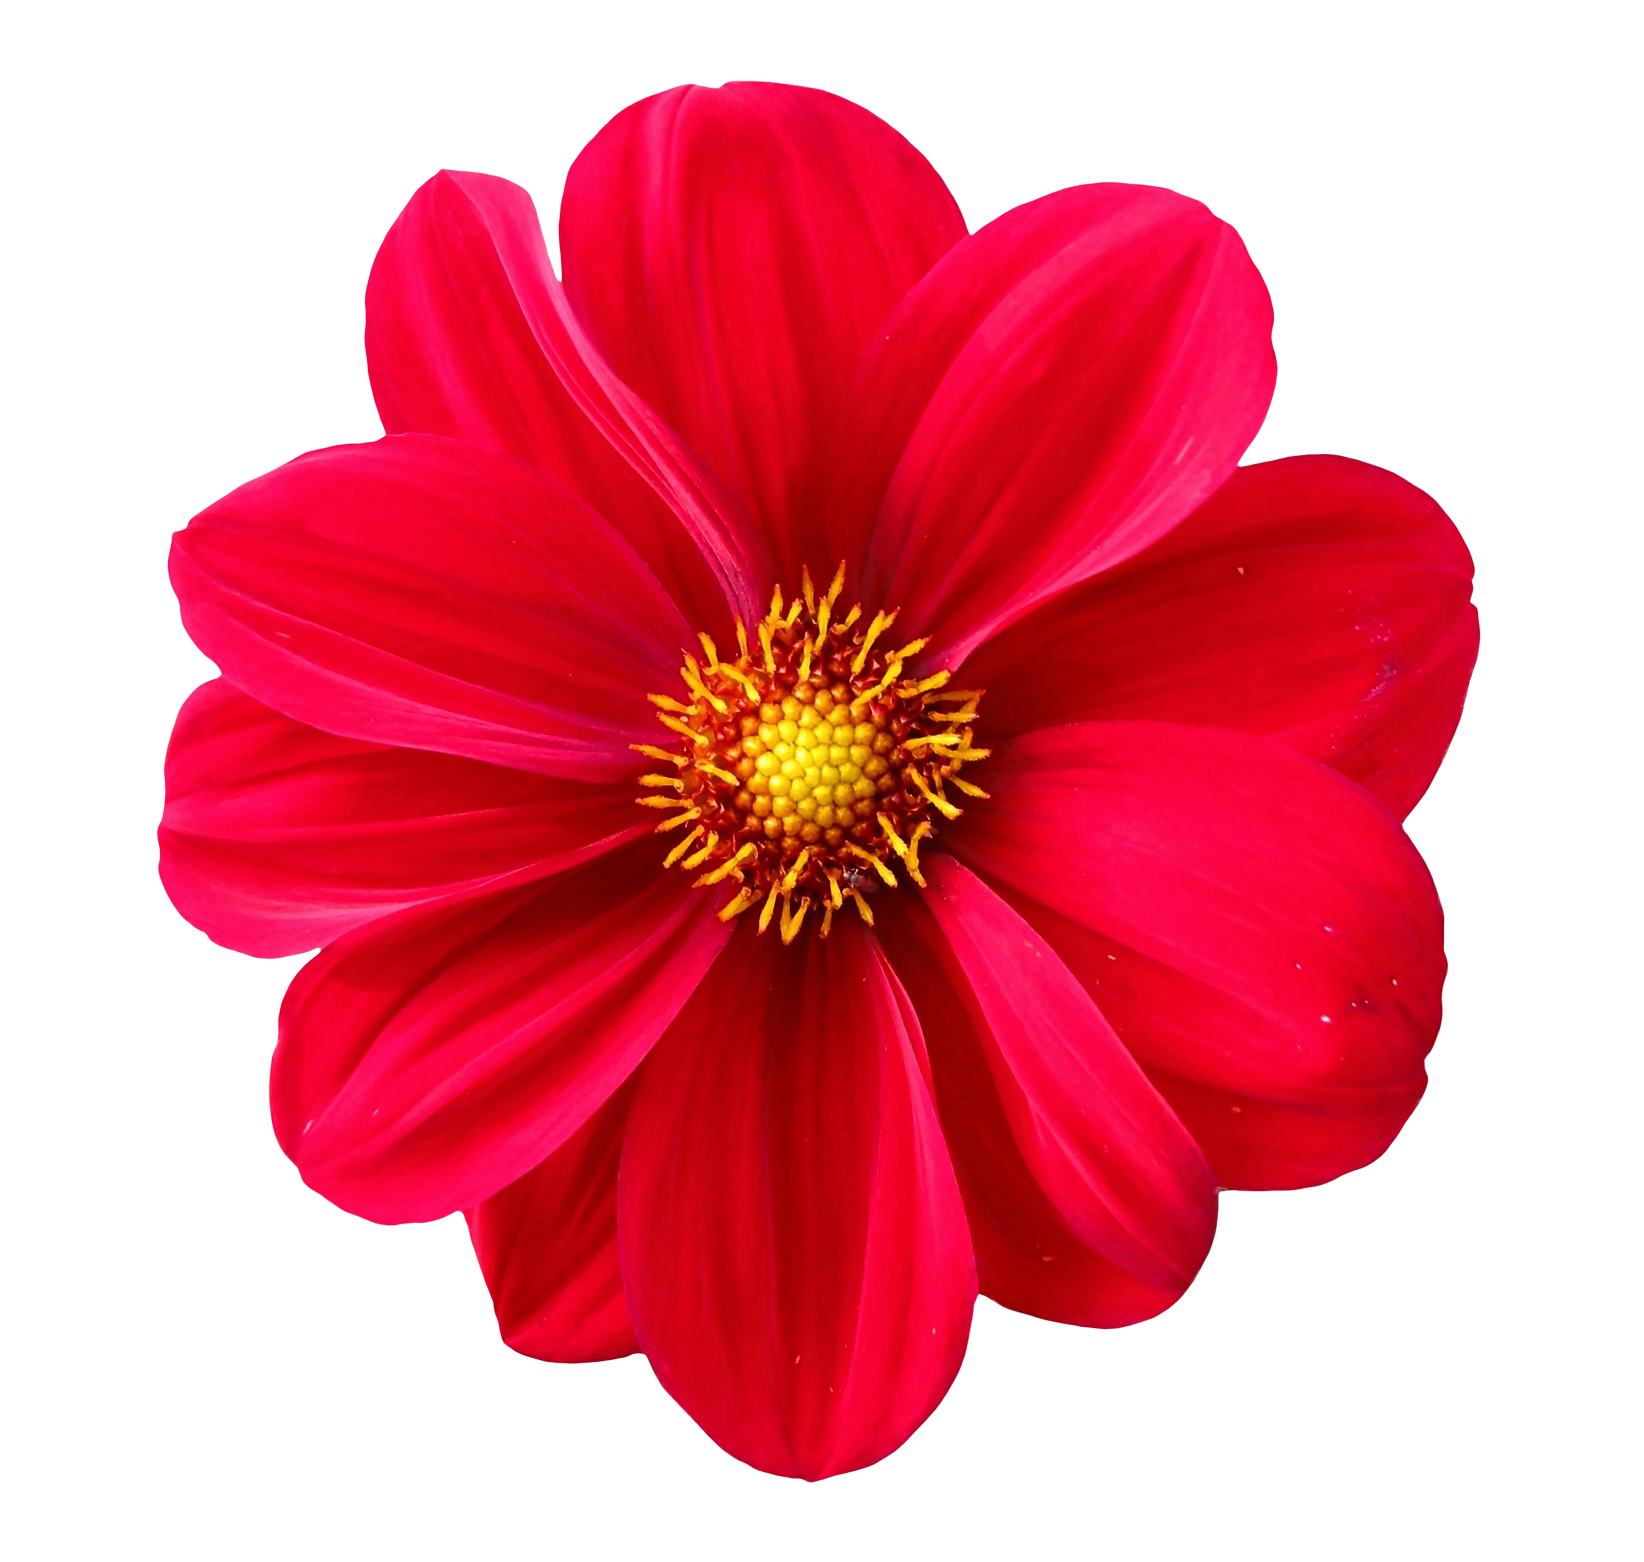 Images pluspng dahlia image. Flower png transparent